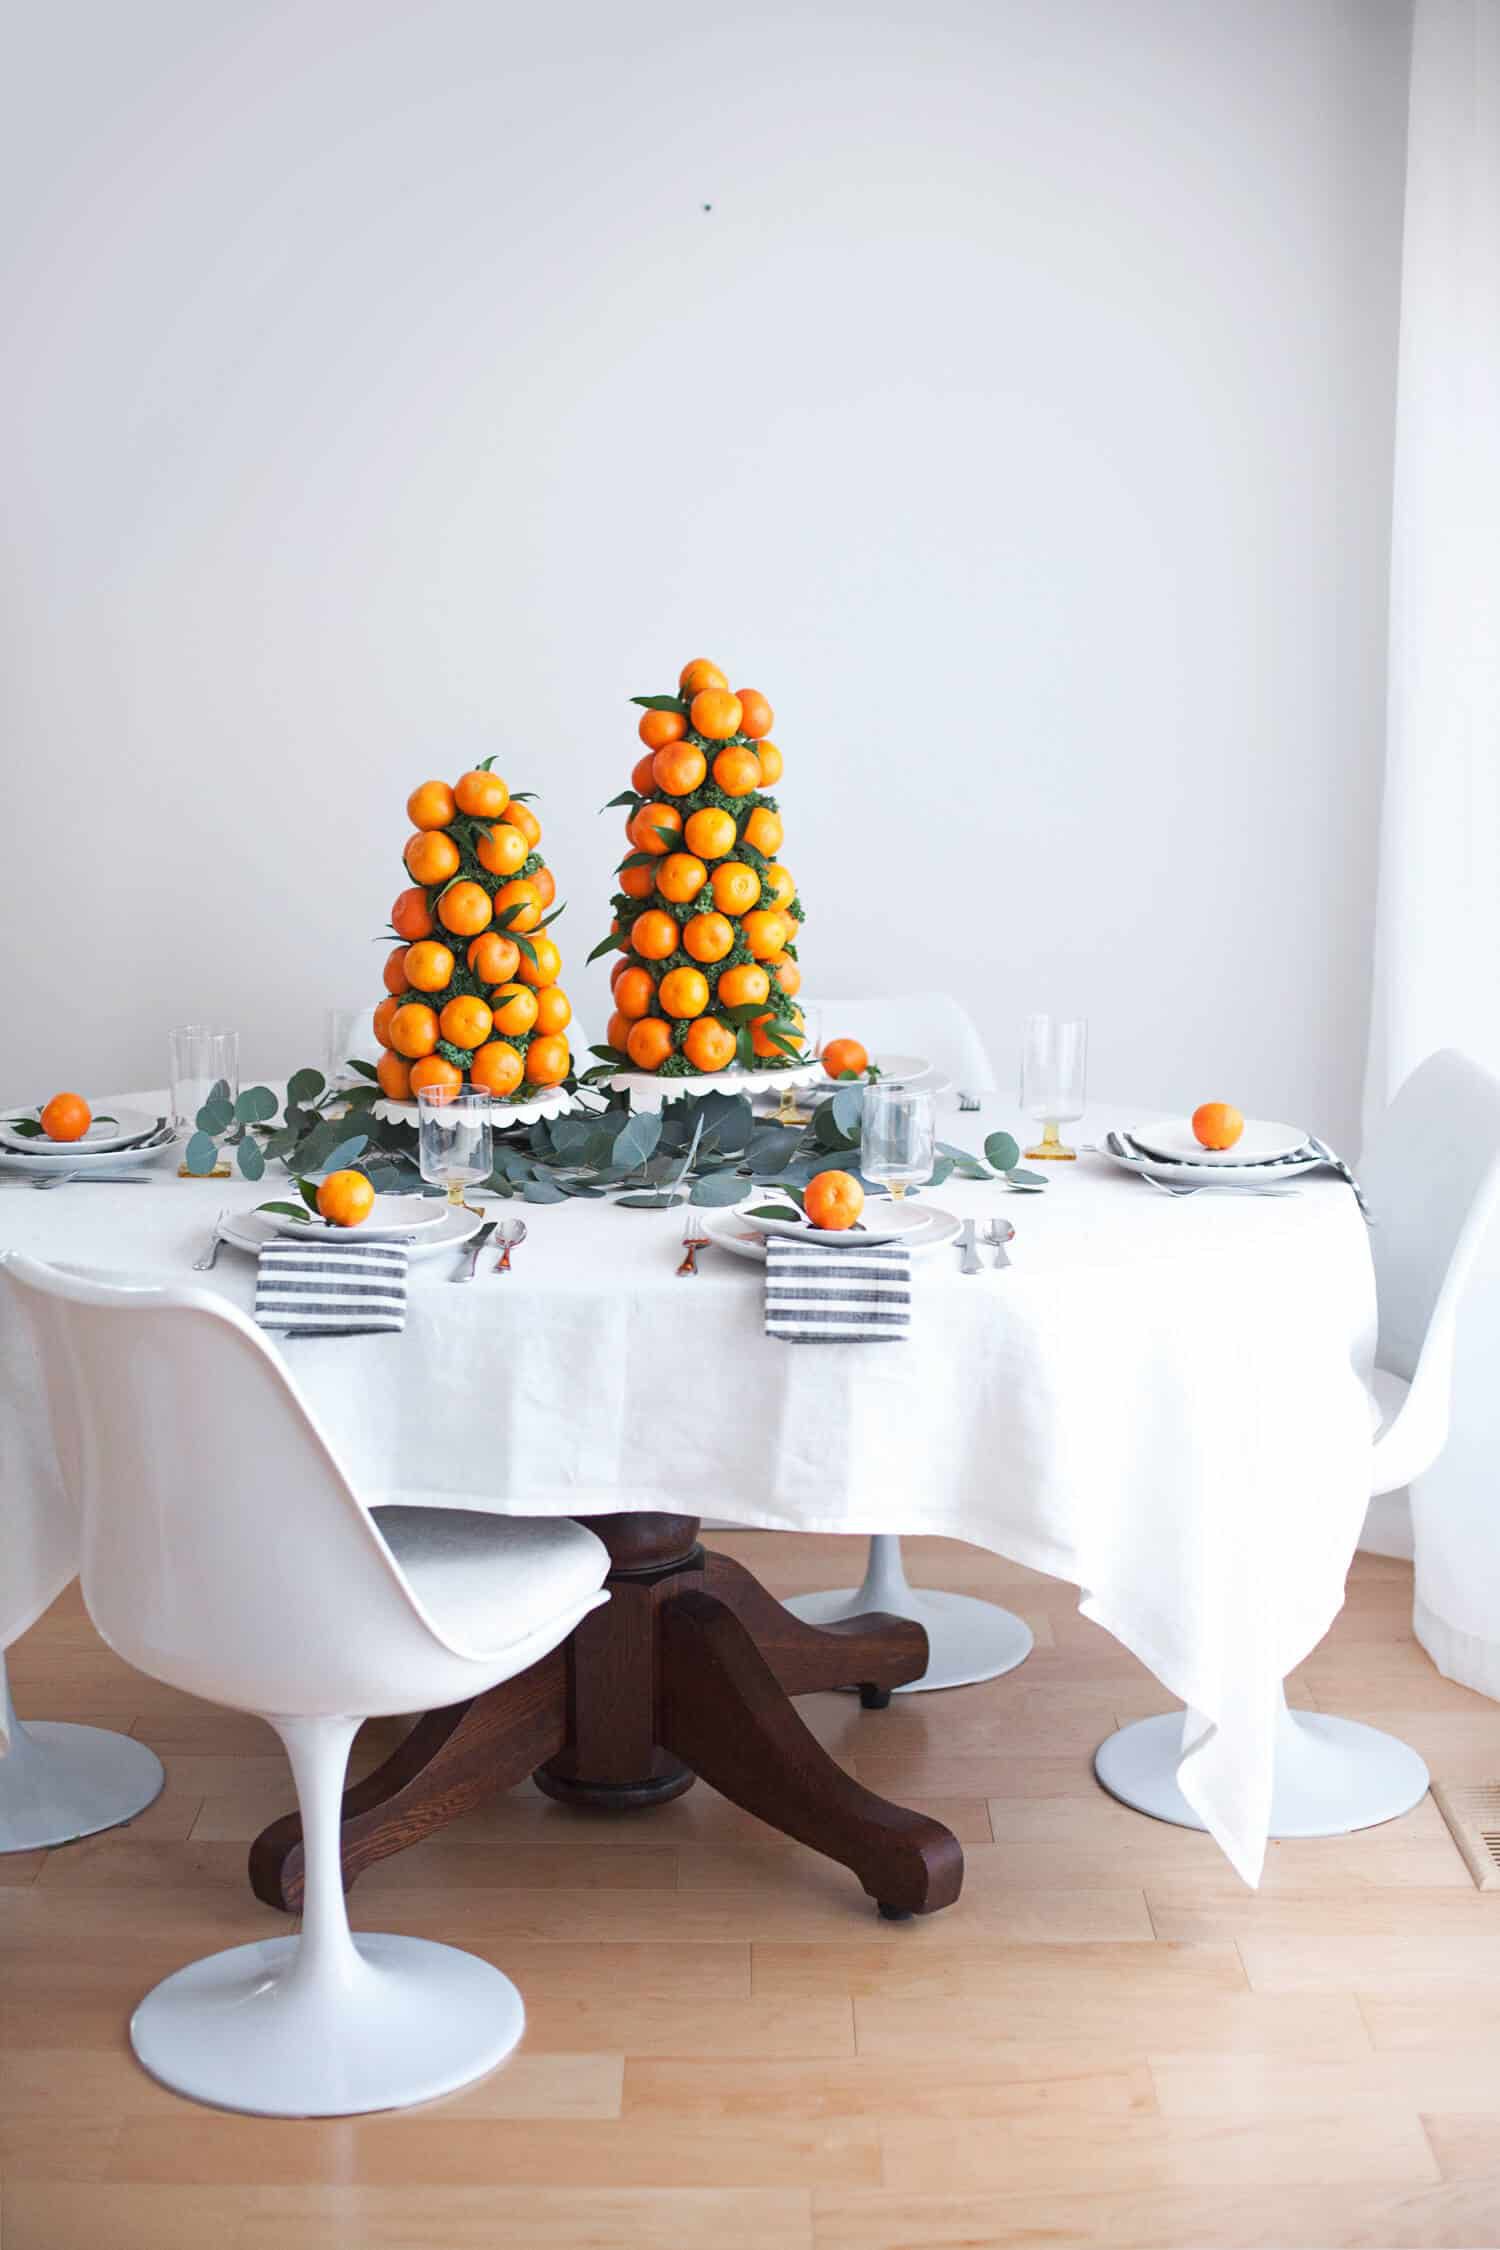 centro de mesa natalino em torre de tangerina fresca